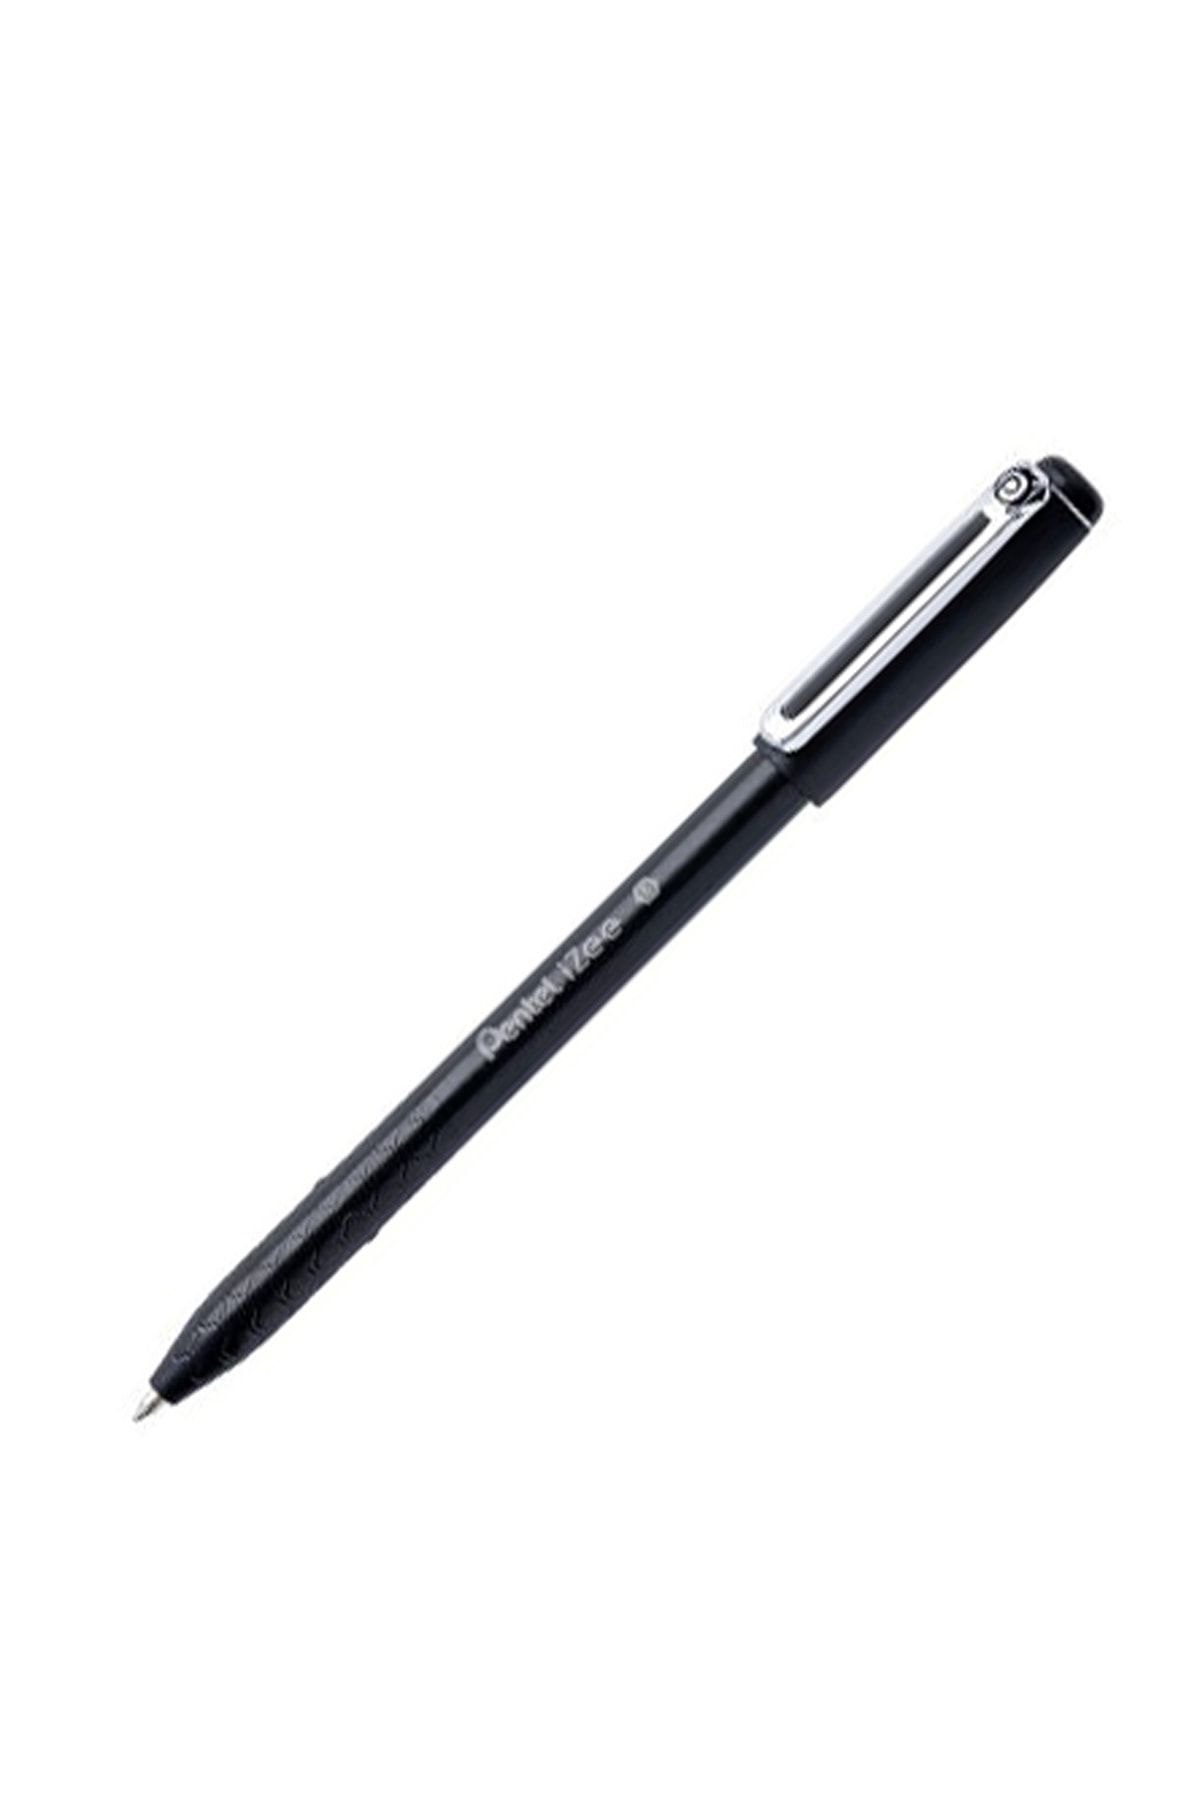 Pentel roller kalem yağ bazlı 1.0mm bx460